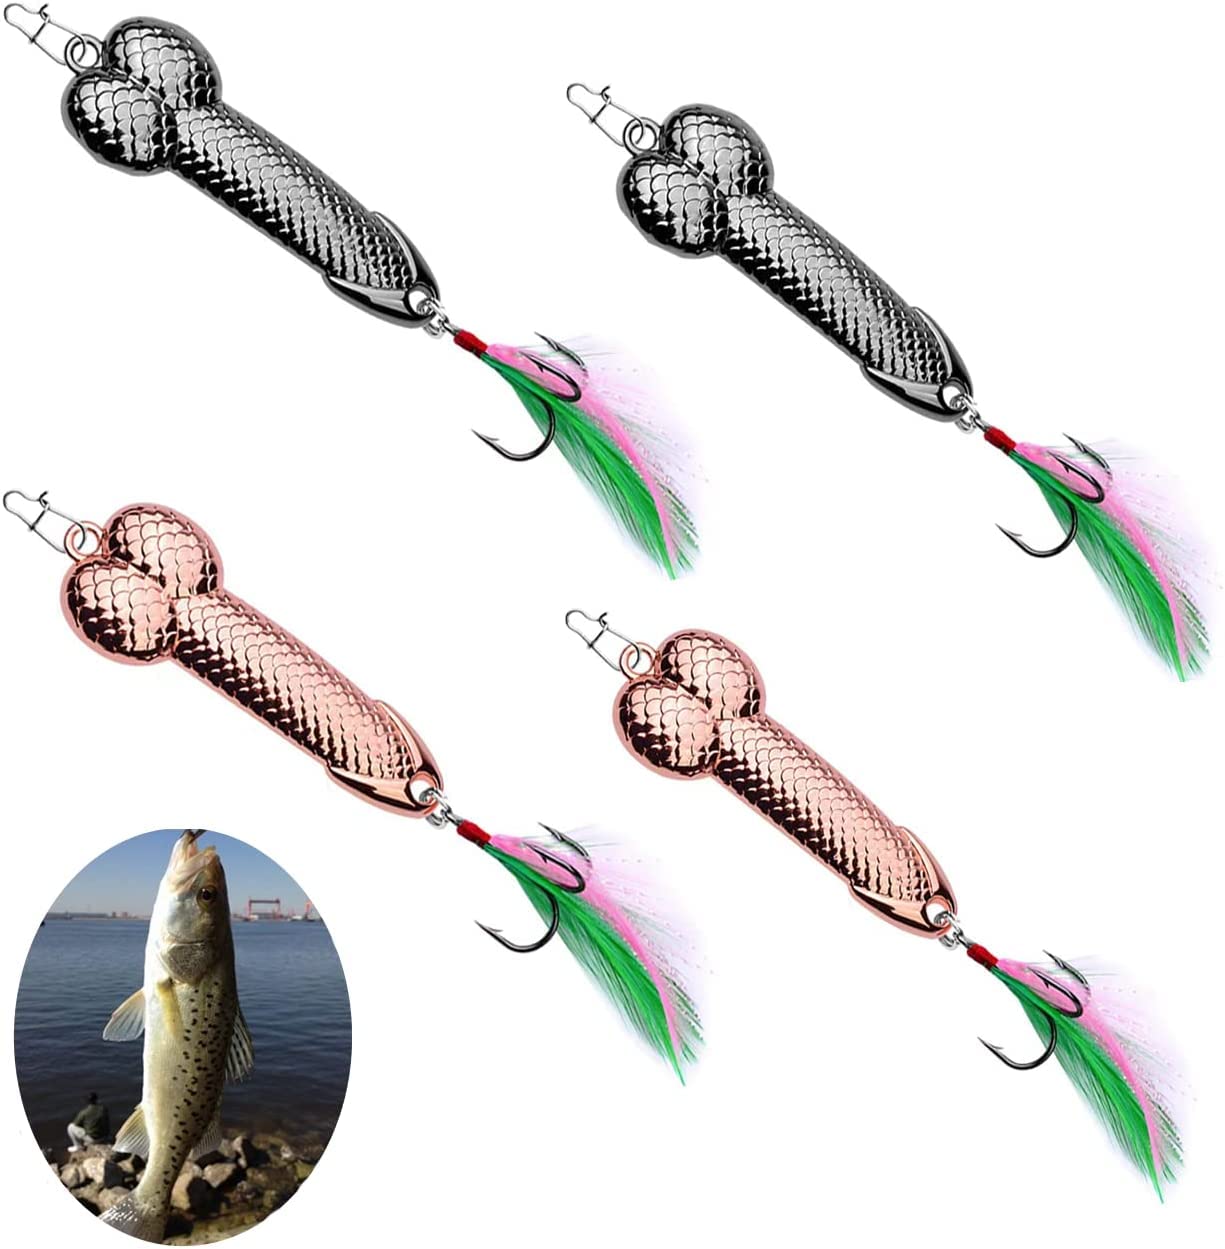 GaiRen Fishing Lures Gag Gift For Men, White Elephant Angler Fishermen Metal Luminous Long Casting Sequin Spoons Lures For Bass